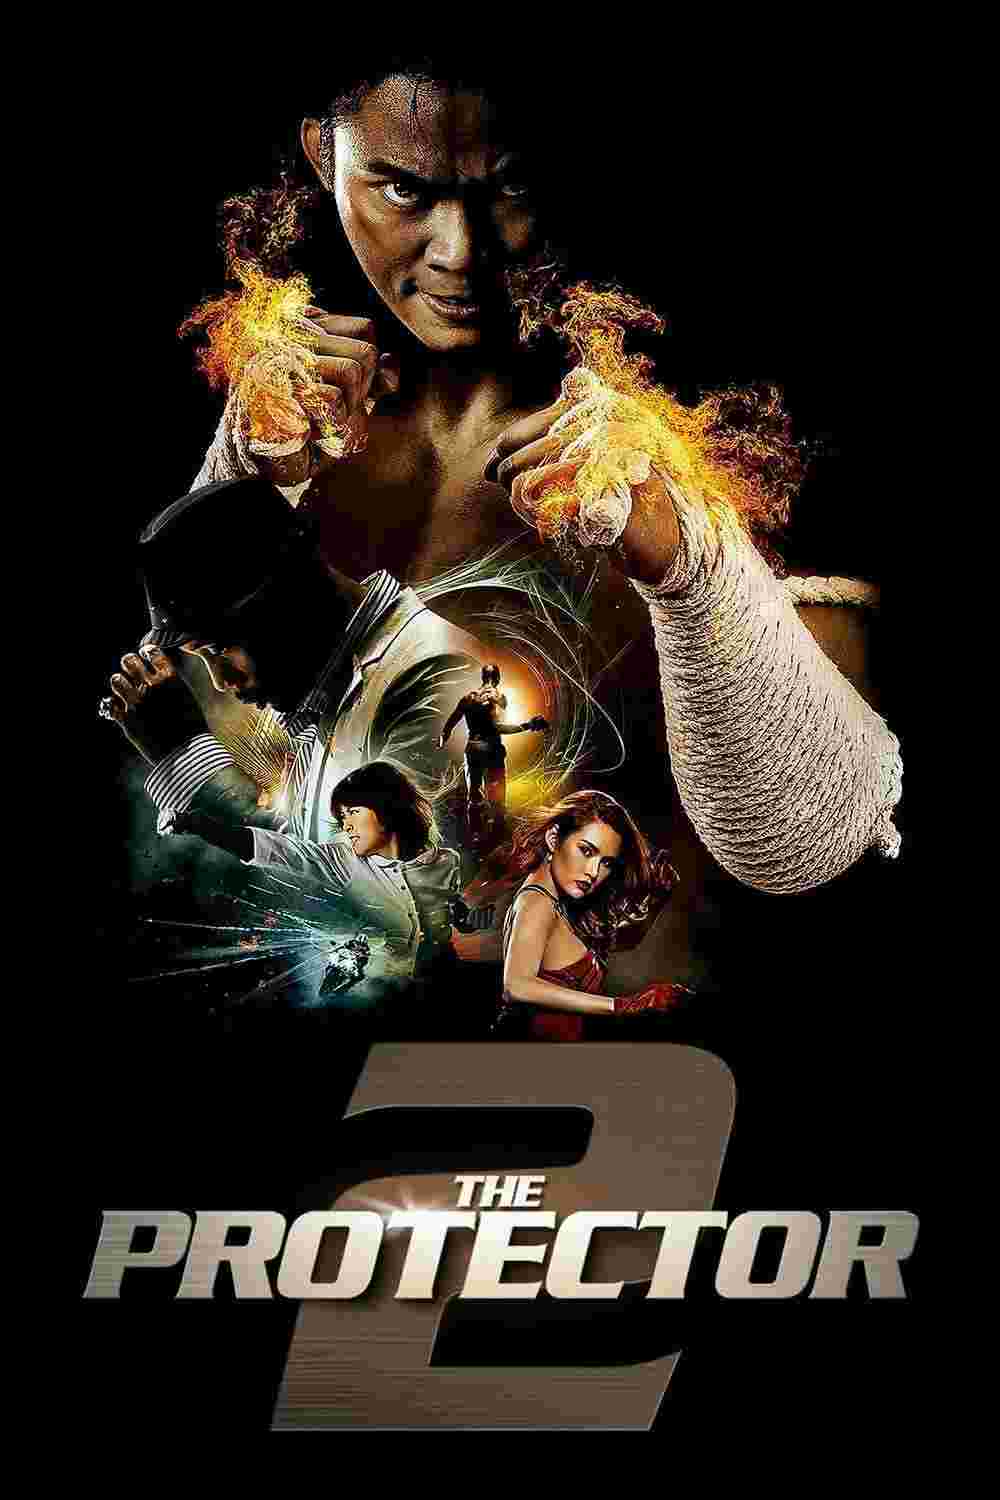 The Protector 2 (2013) Tony Jaa